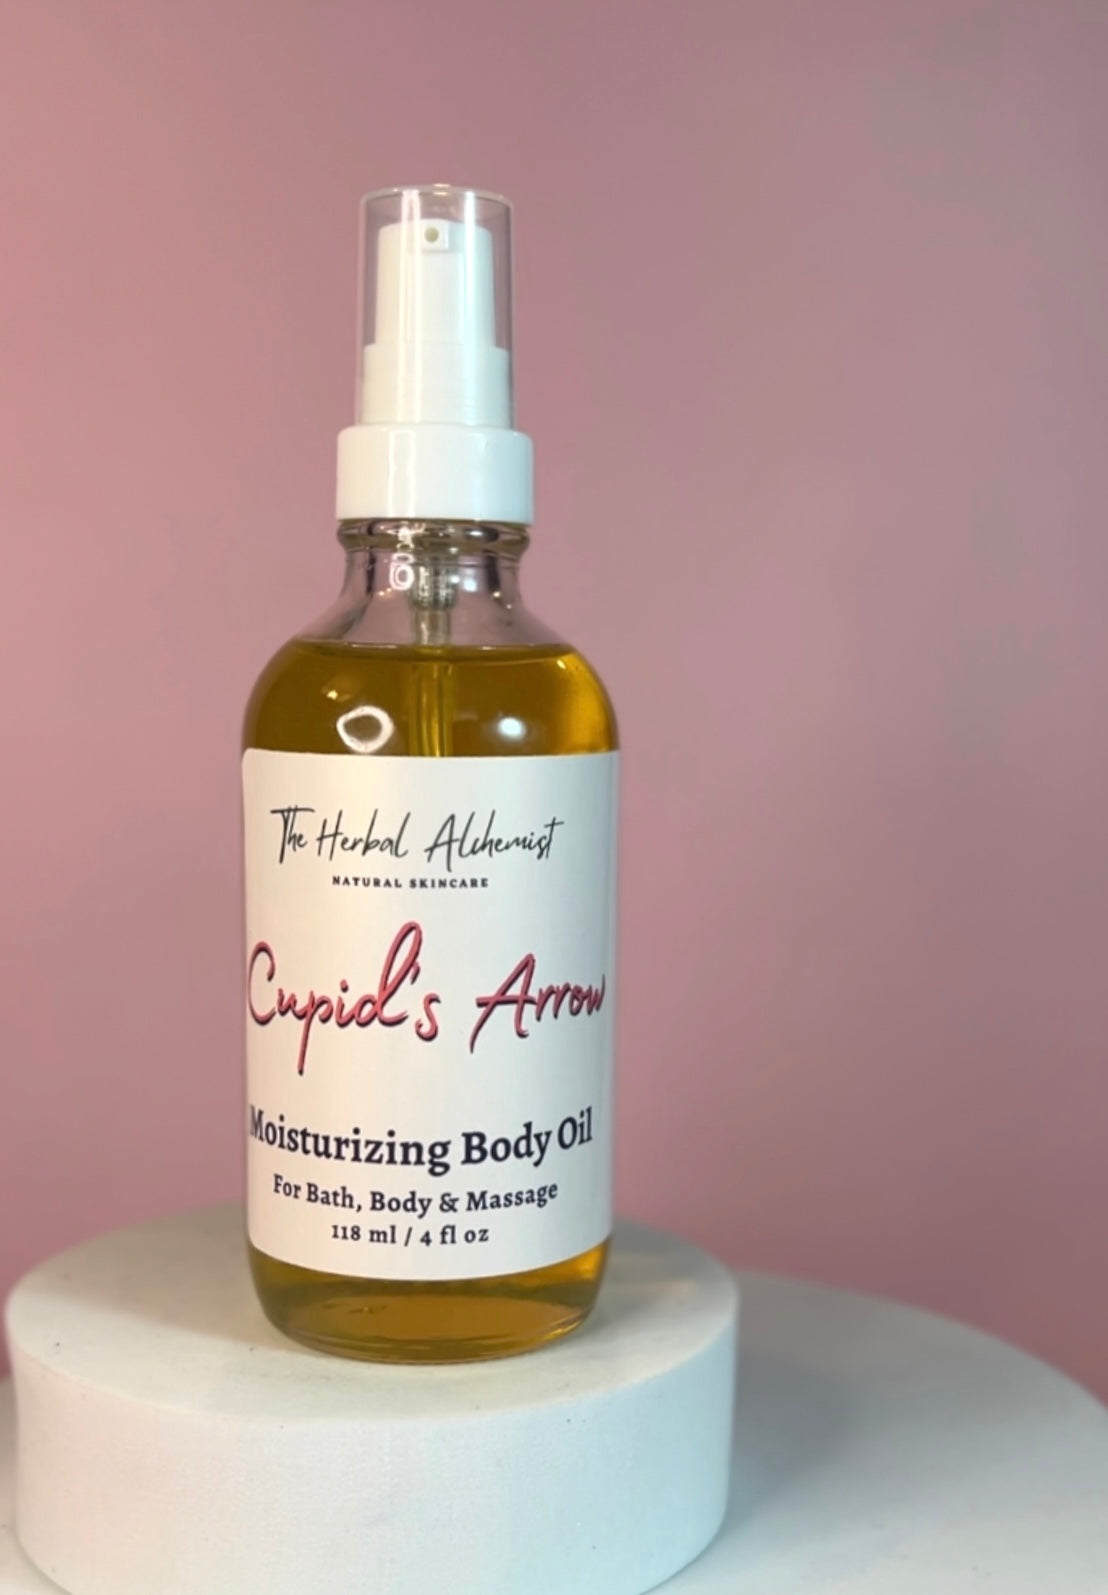 Cupid's Arrow Body Oil